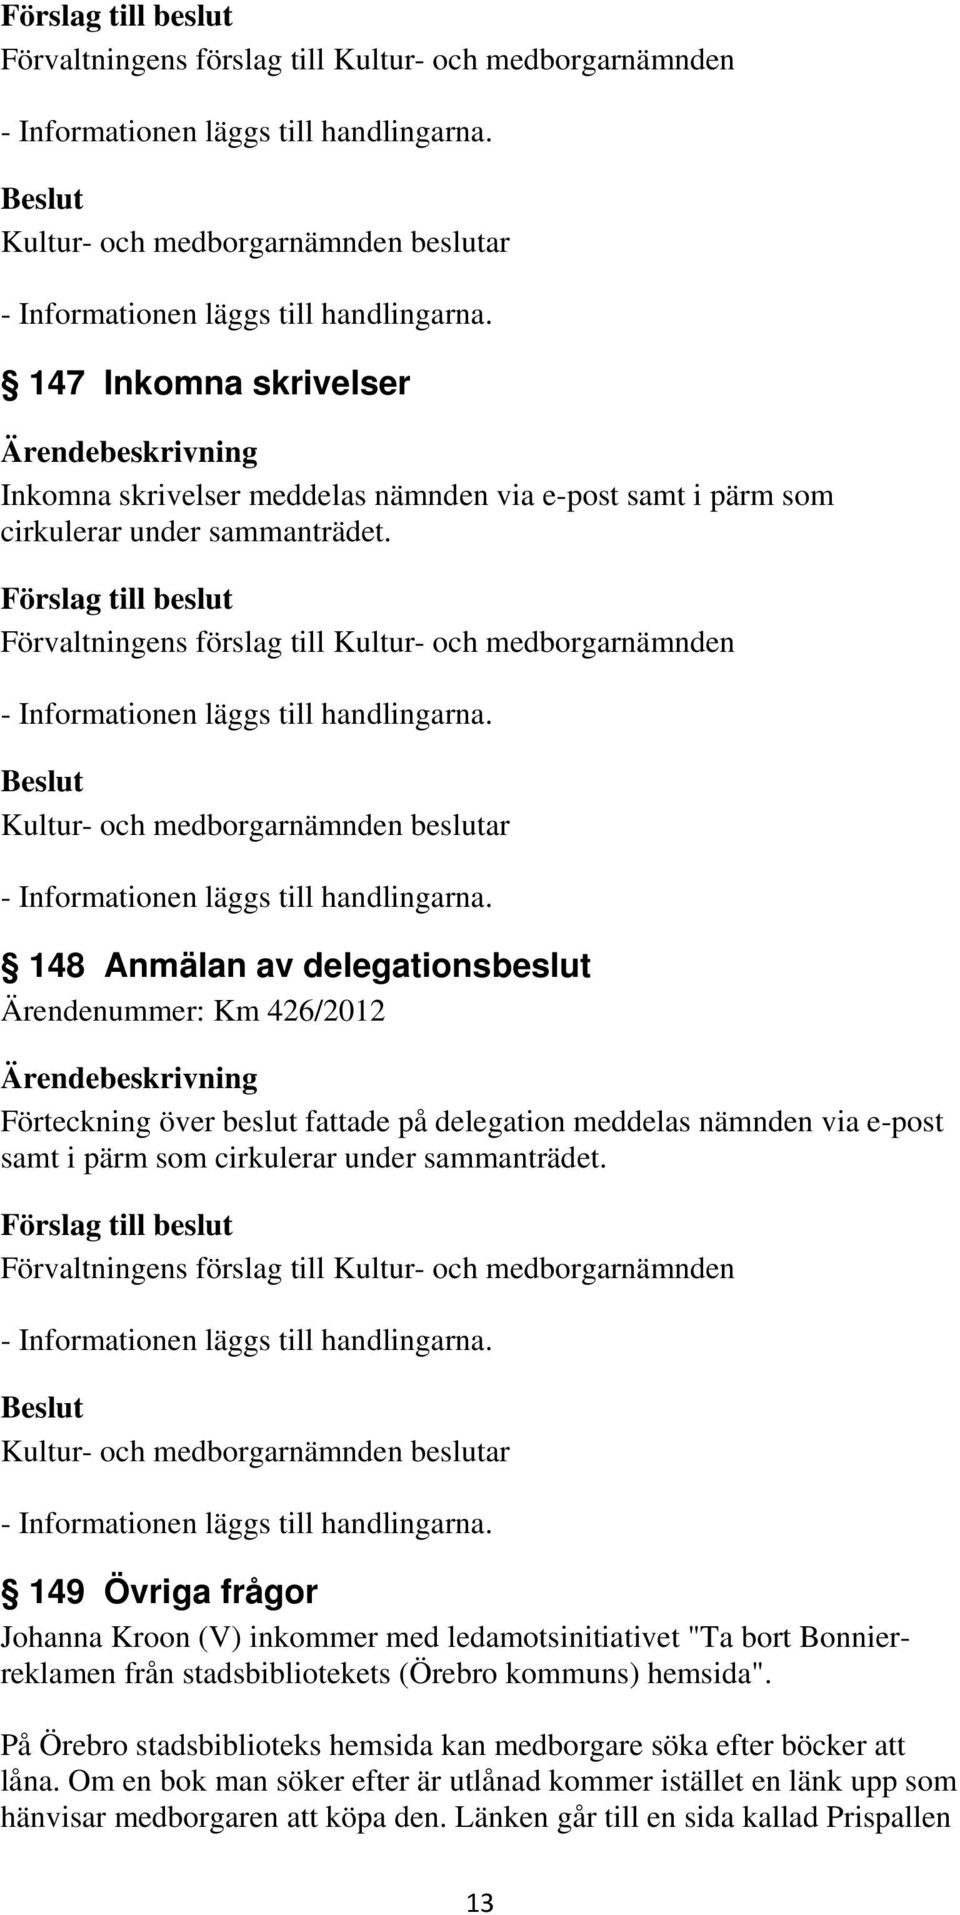 sammanträdet. 149 Övriga frågor Johanna Kroon (V) inkommer med ledamotsinitiativet "Ta bort Bonnierreklamen från stadsbibliotekets (Örebro kommuns) hemsida".